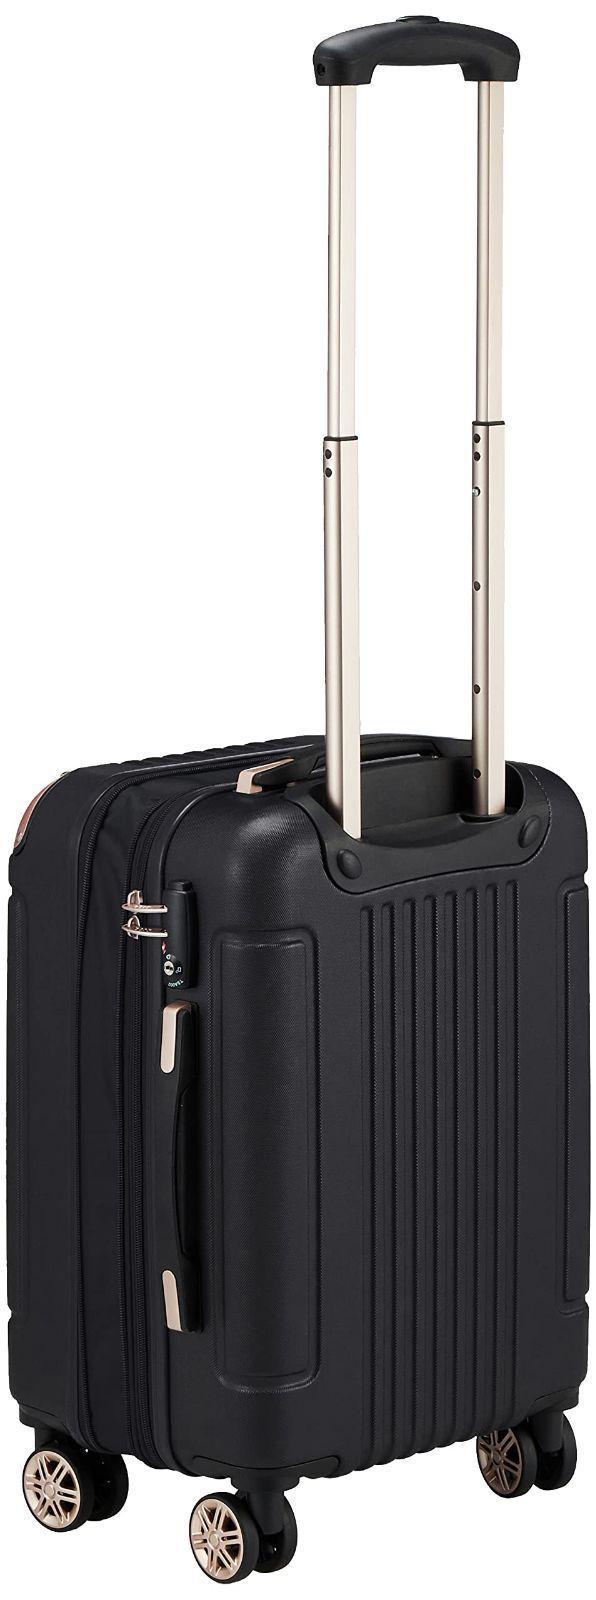 【色:ネイビー】ルコックスポルティフ スーツケース ハード シボ加工 拡張機能